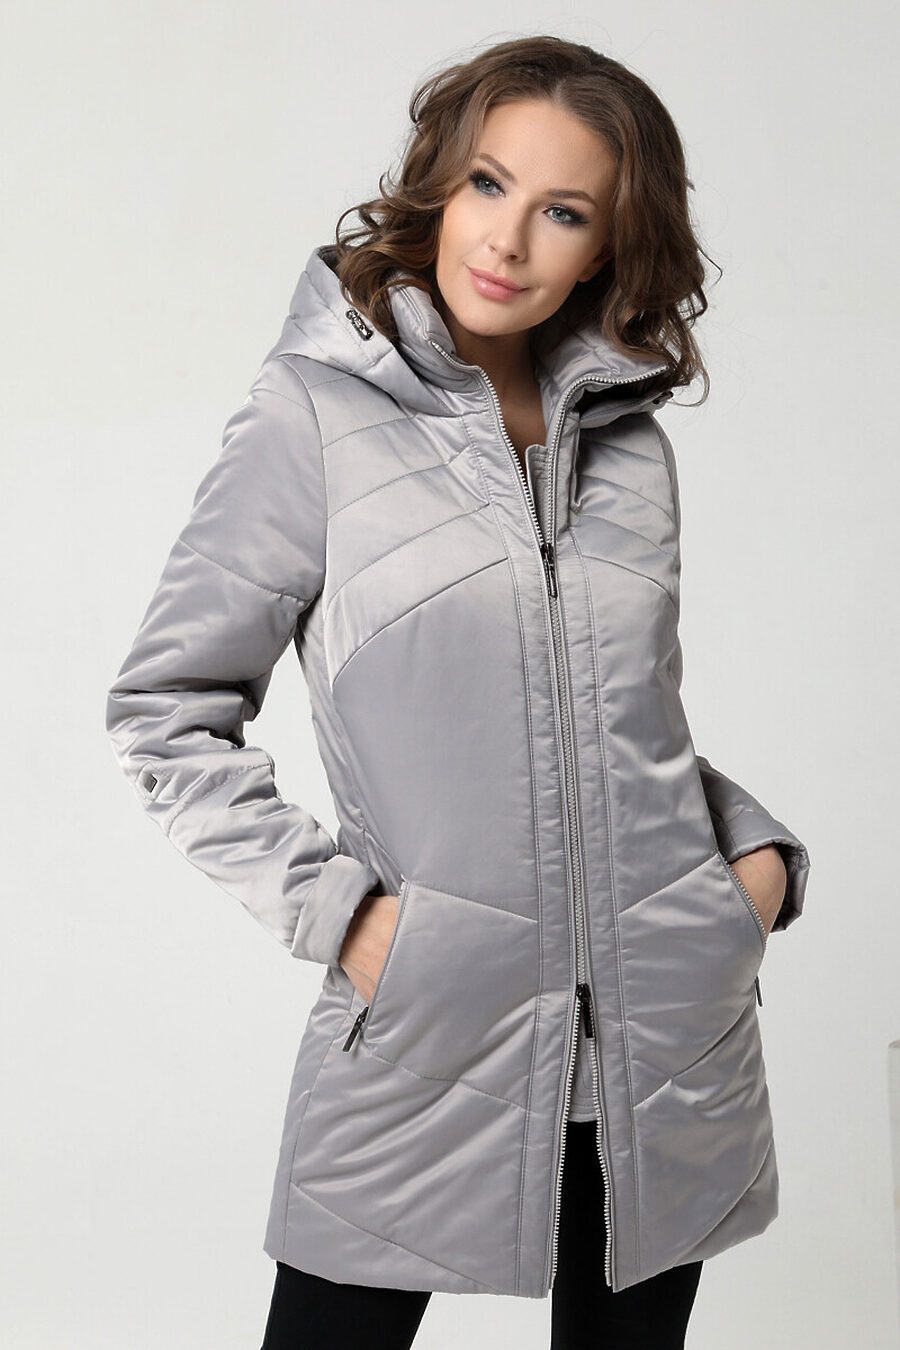 Куртка DIWAY (684837), купить в Moyo.moda